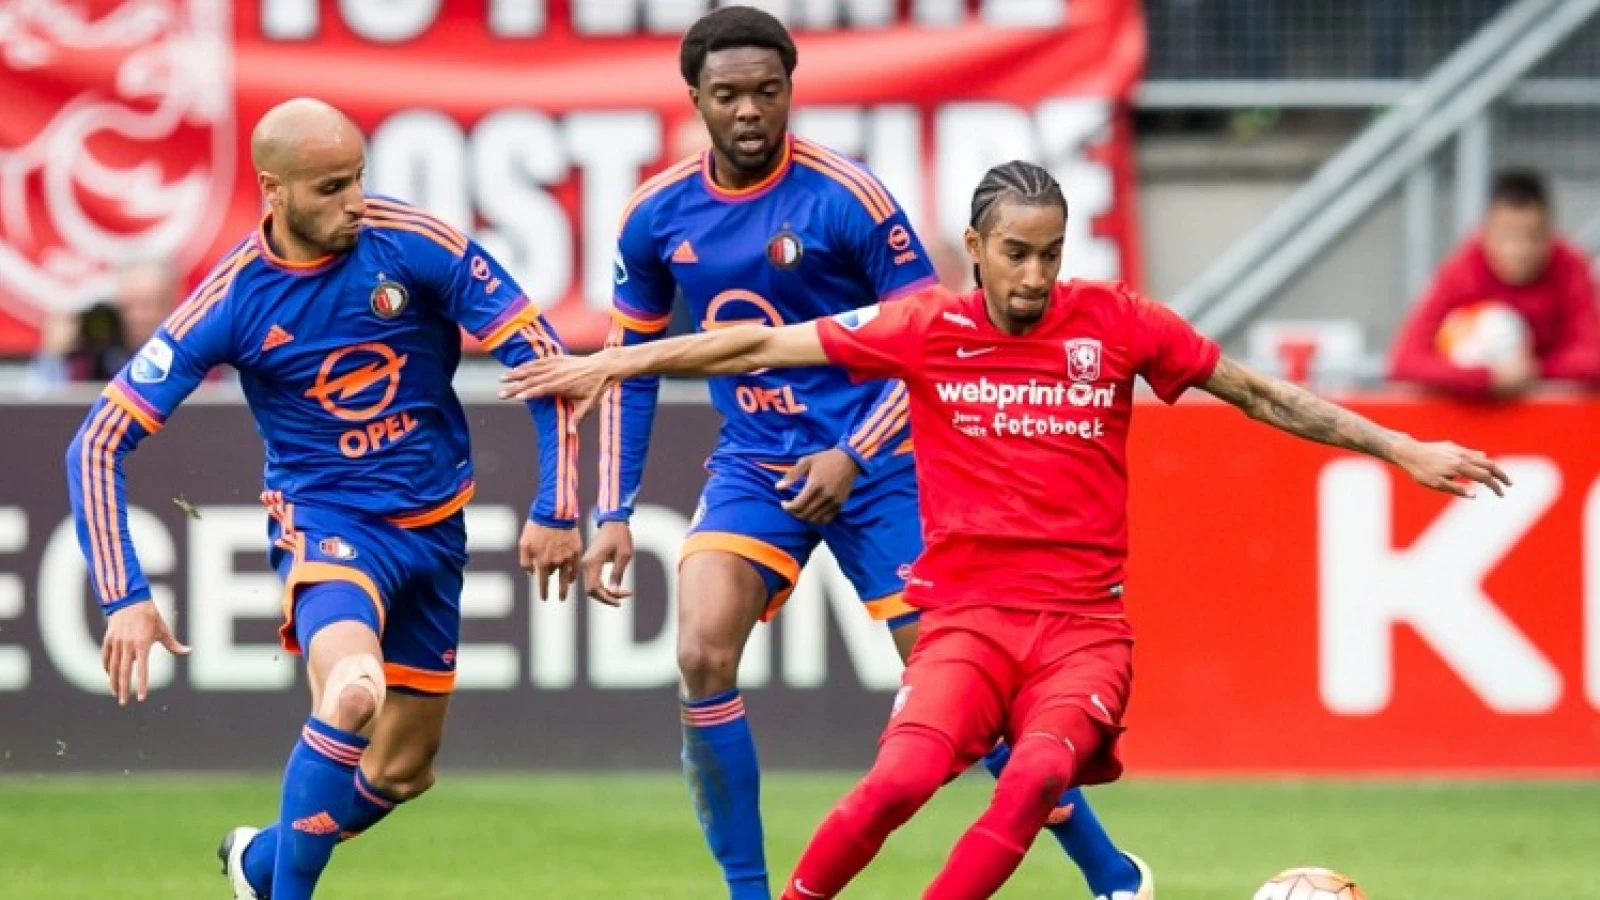 Oppermachtig Feyenoord wint met slechts 1-0 in Enschede